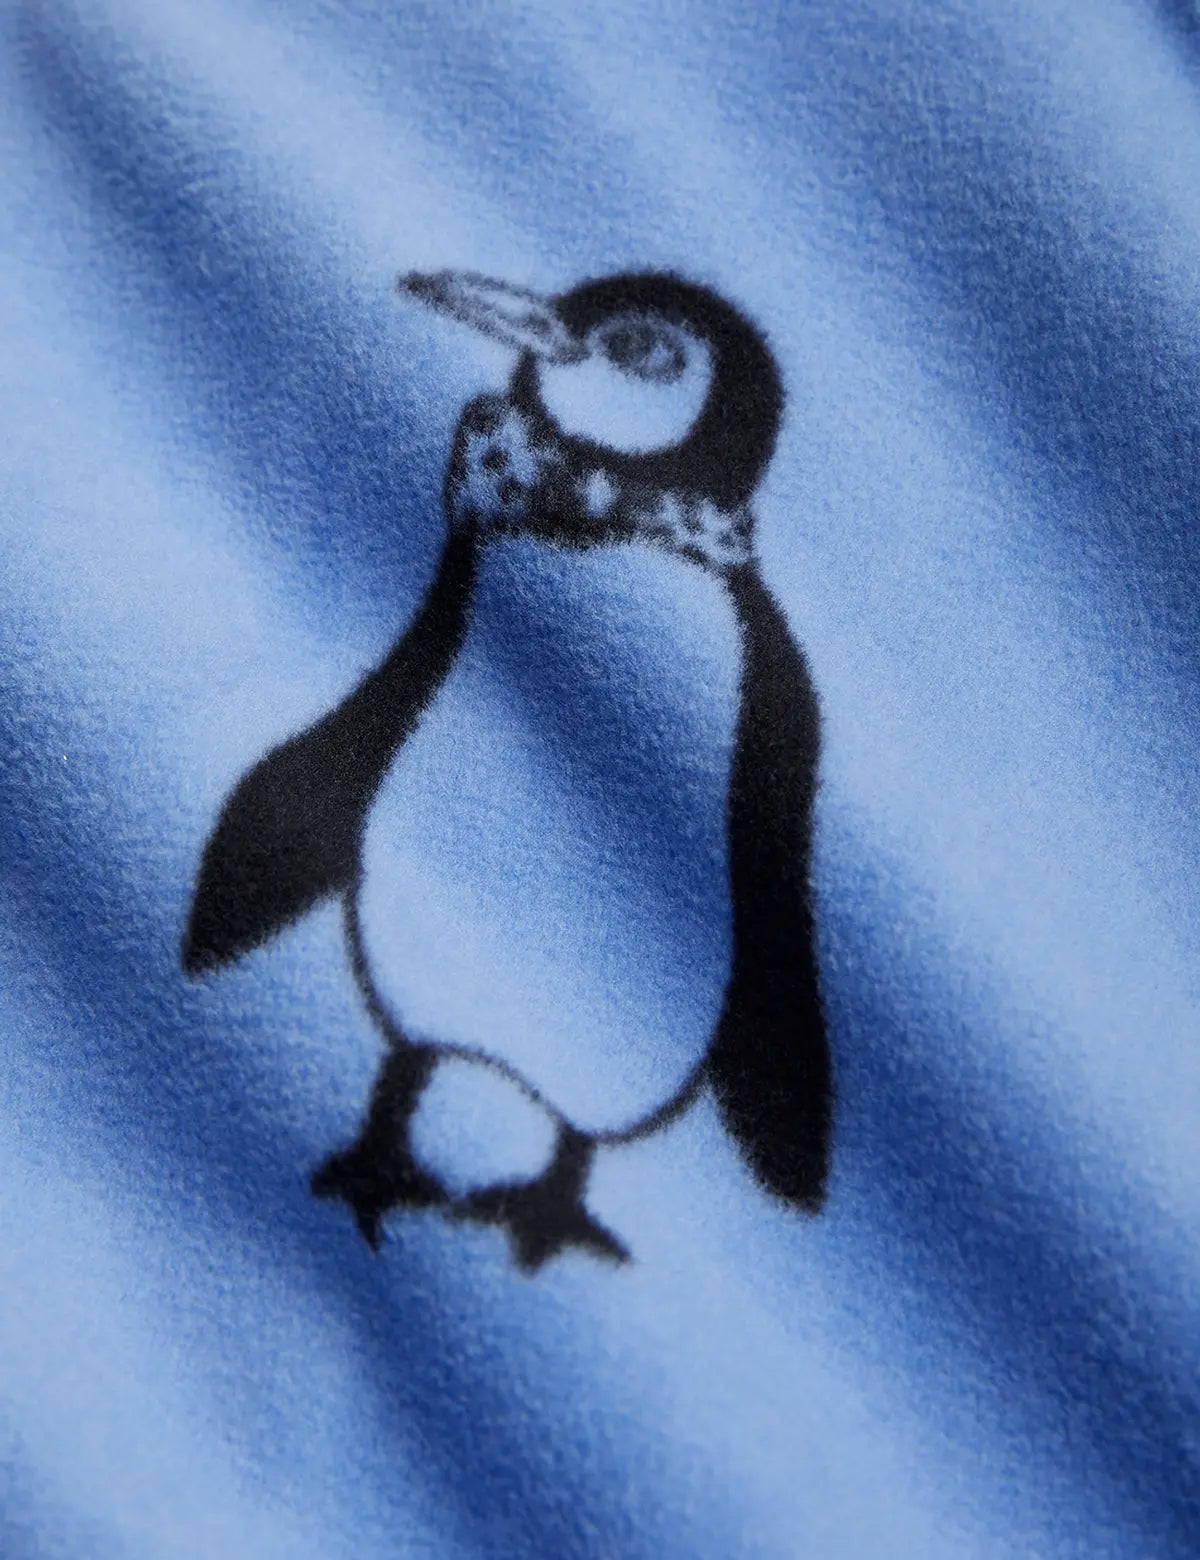 Penguin Fleece Romper